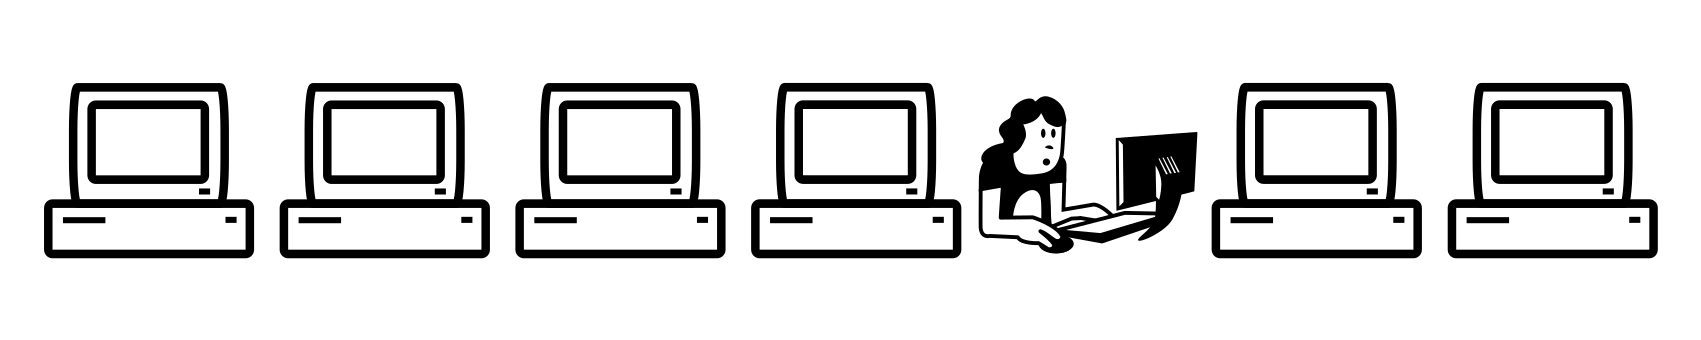 Eine Reihe mit Cliparts. 4 Computer, eine Person am Computer und zwei weitere Computer.